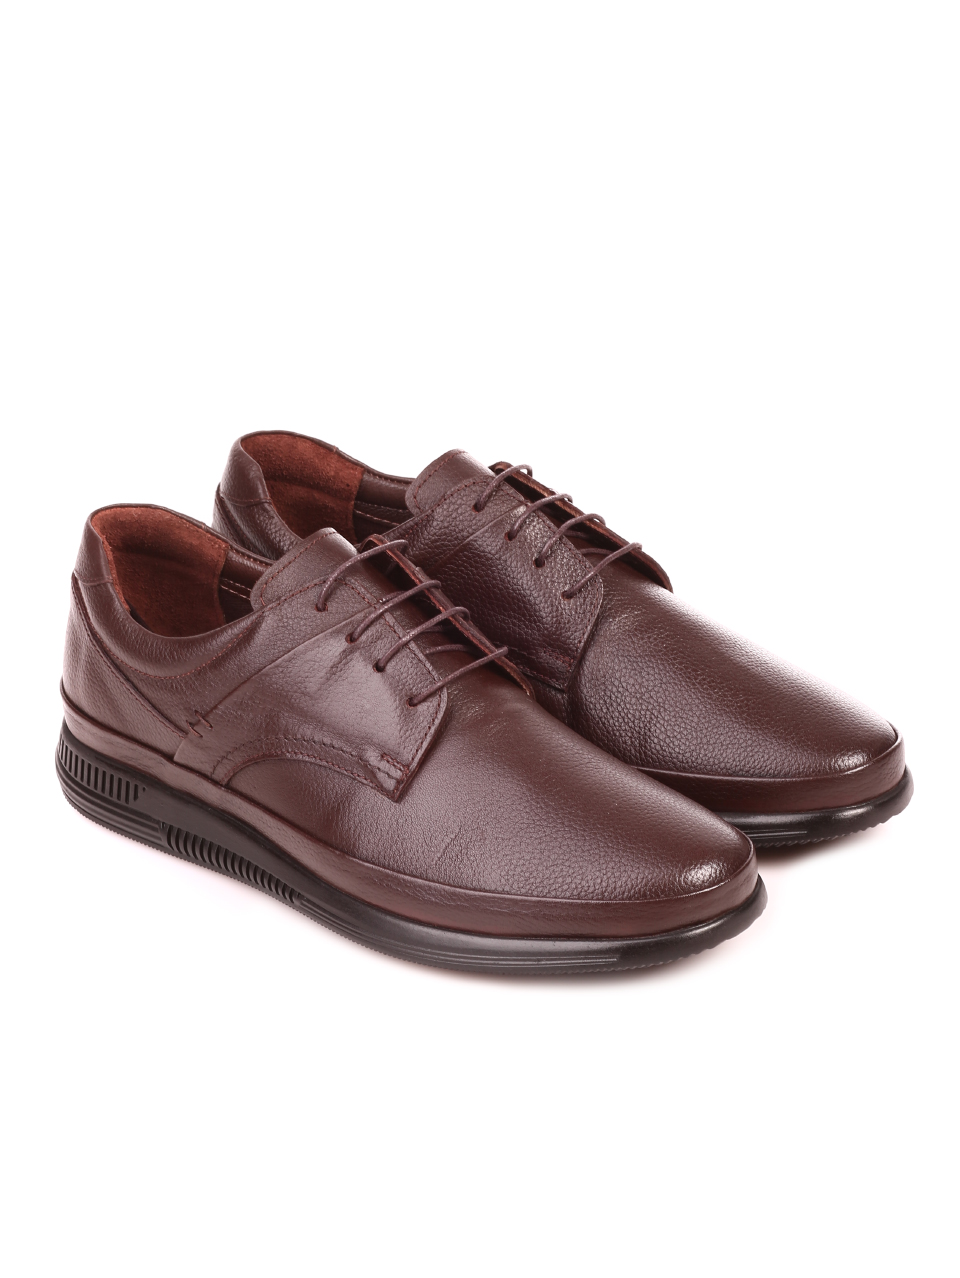 Ежедневни мъжки обувки от естествена кожа 7AT-21880 brown